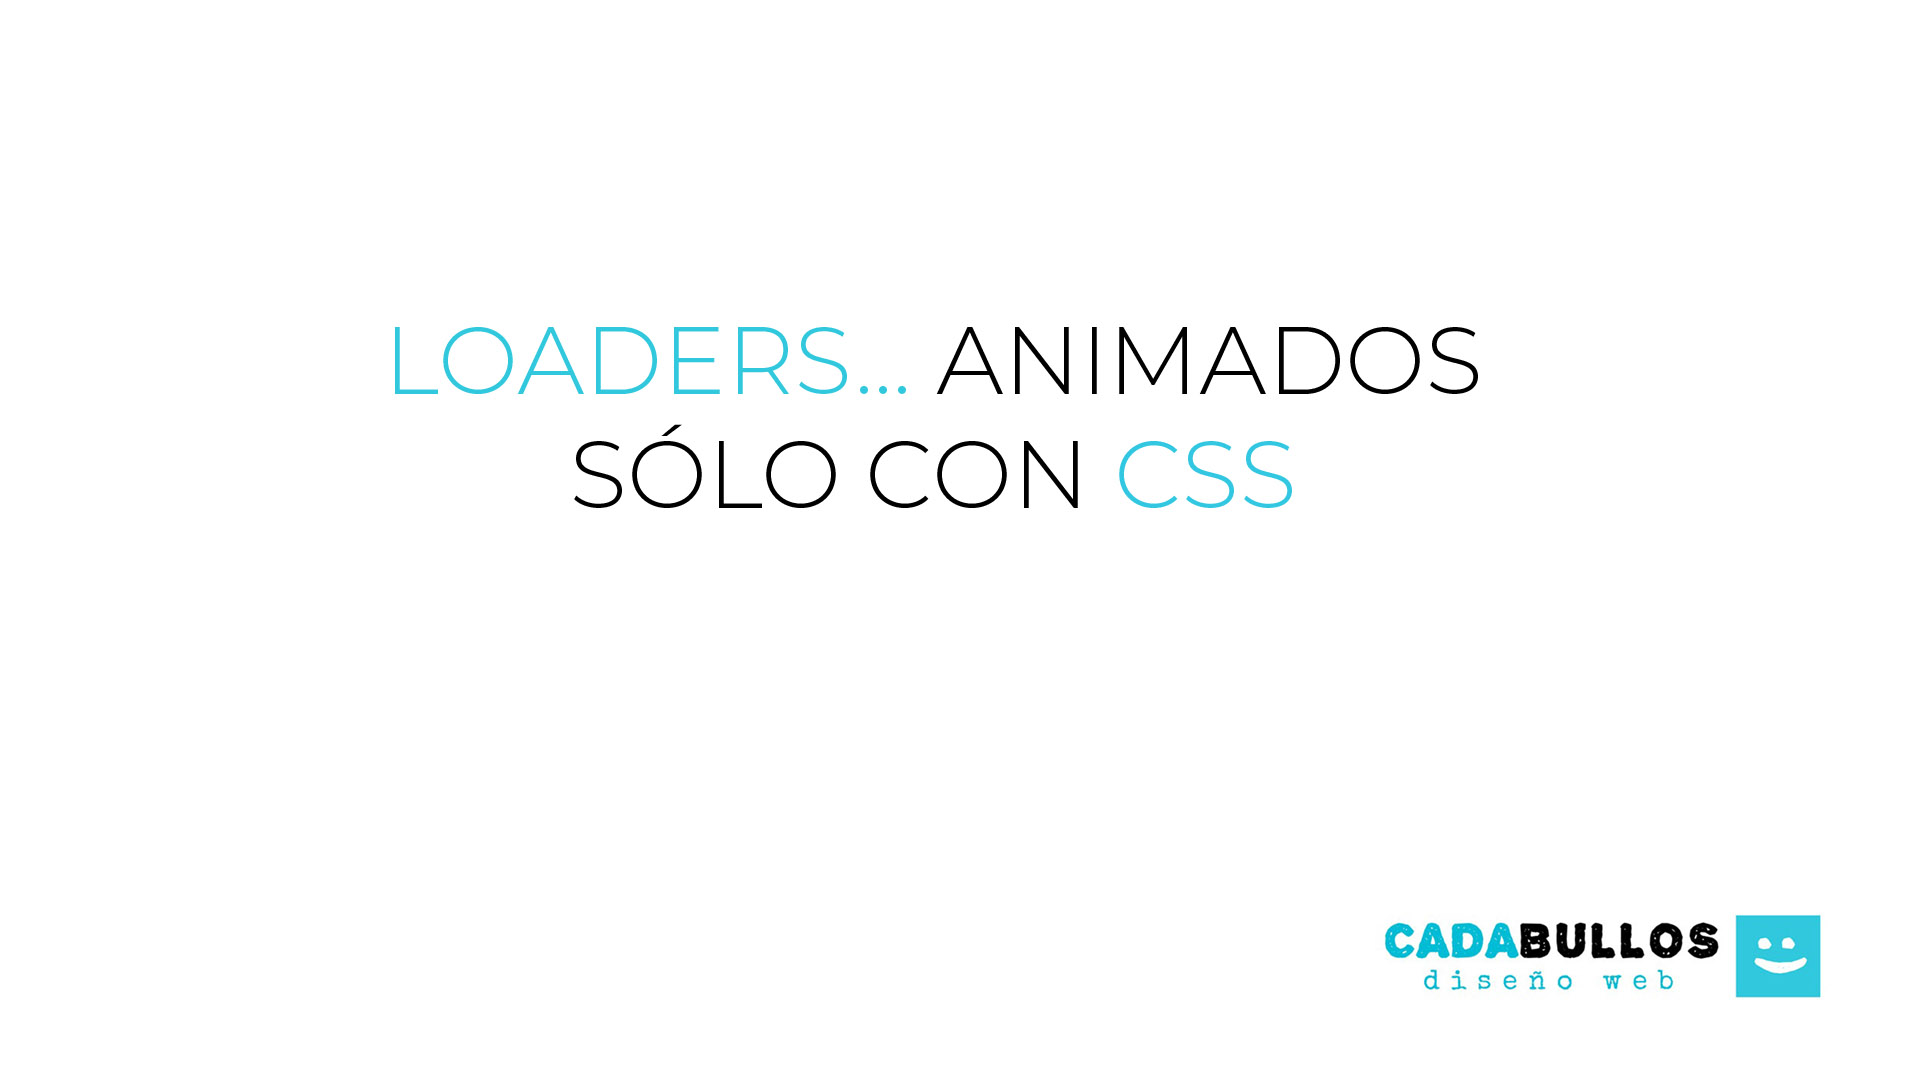 Ejemplos de cómo realizar un cargando animado (loader...) usando sólo CSS.